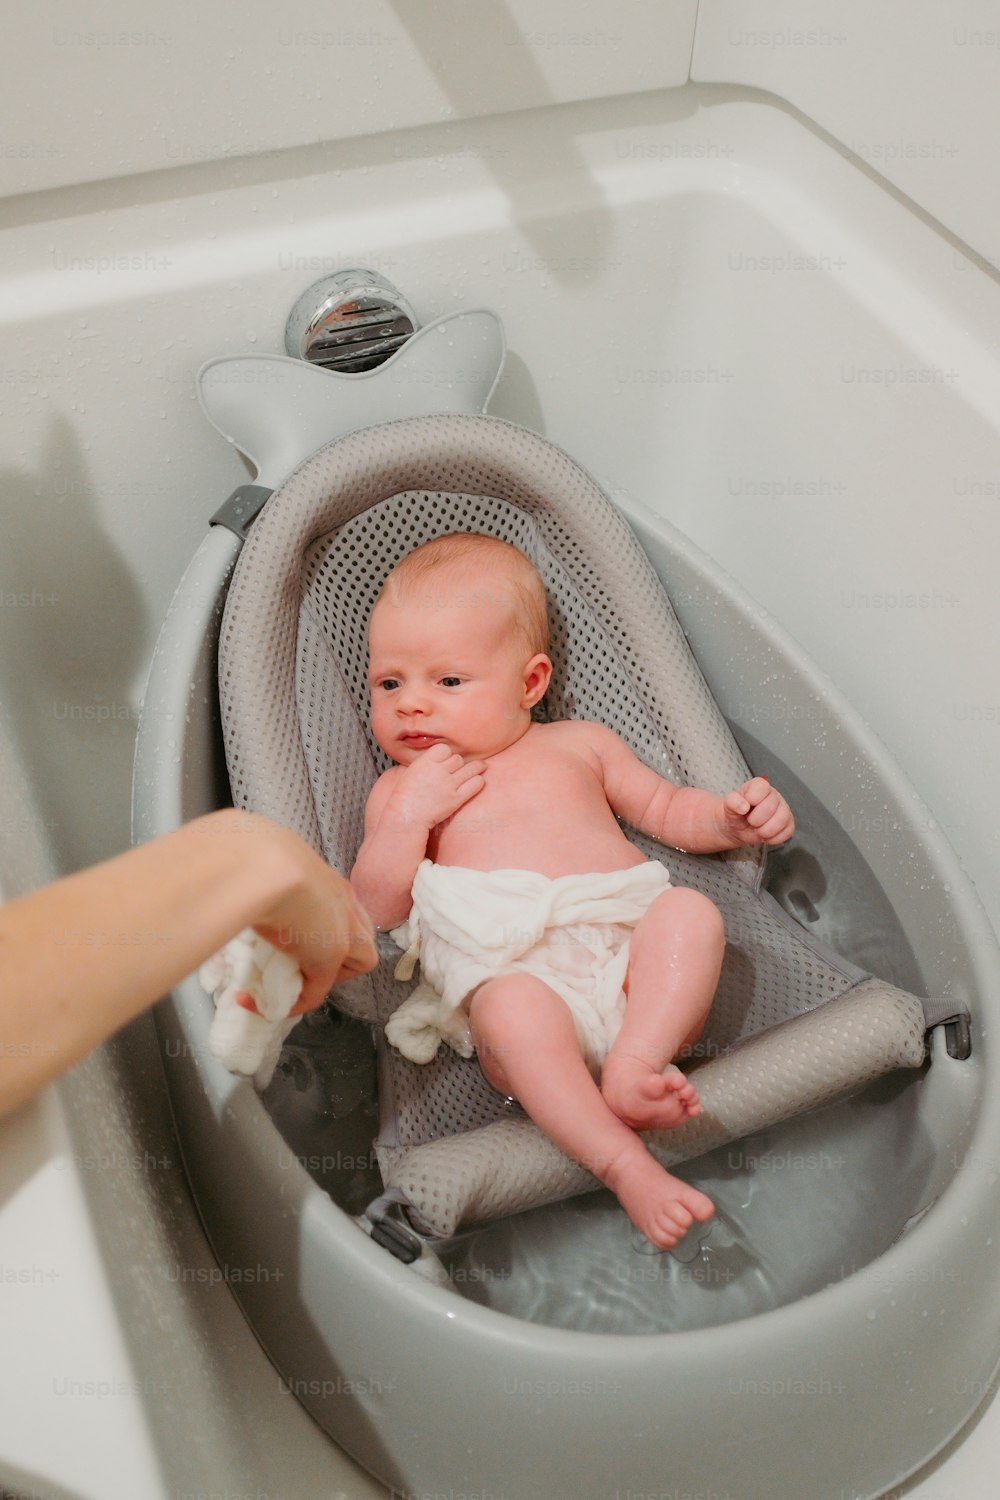 Ein Baby in einer Badewanne, das von einer Person gehalten wird